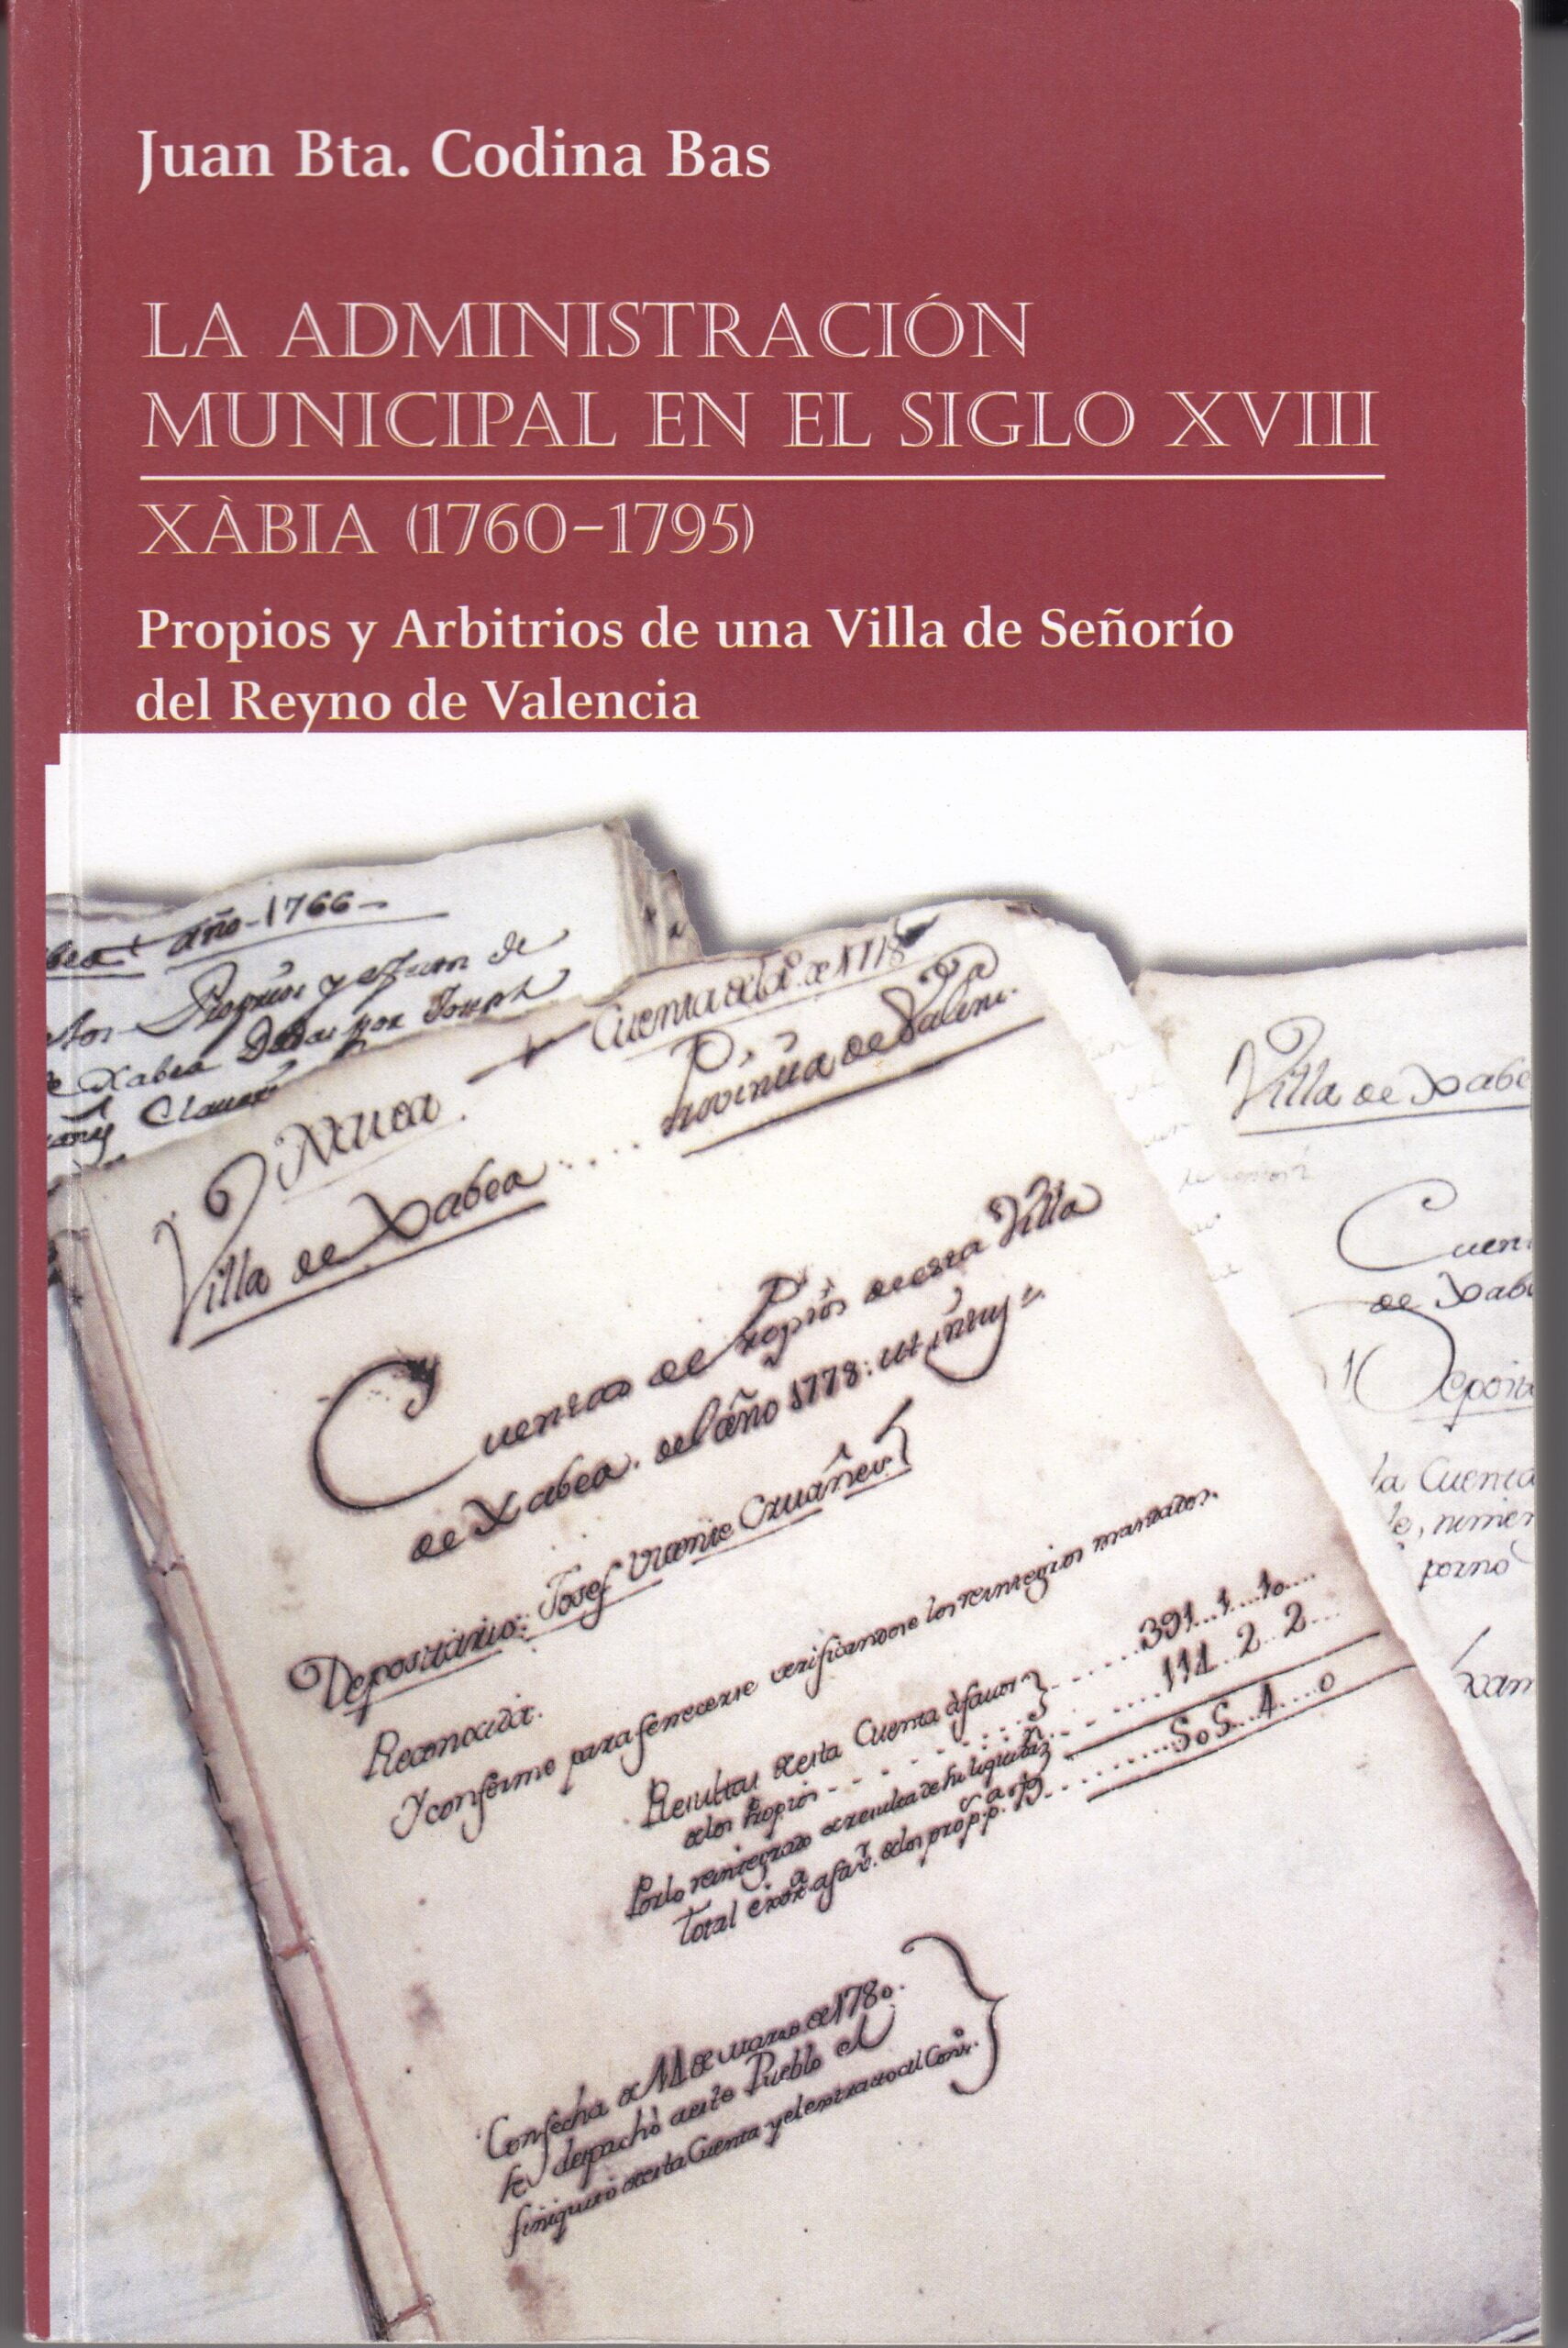 Libro de Juan Bta. Codina Bas publicado en 2014